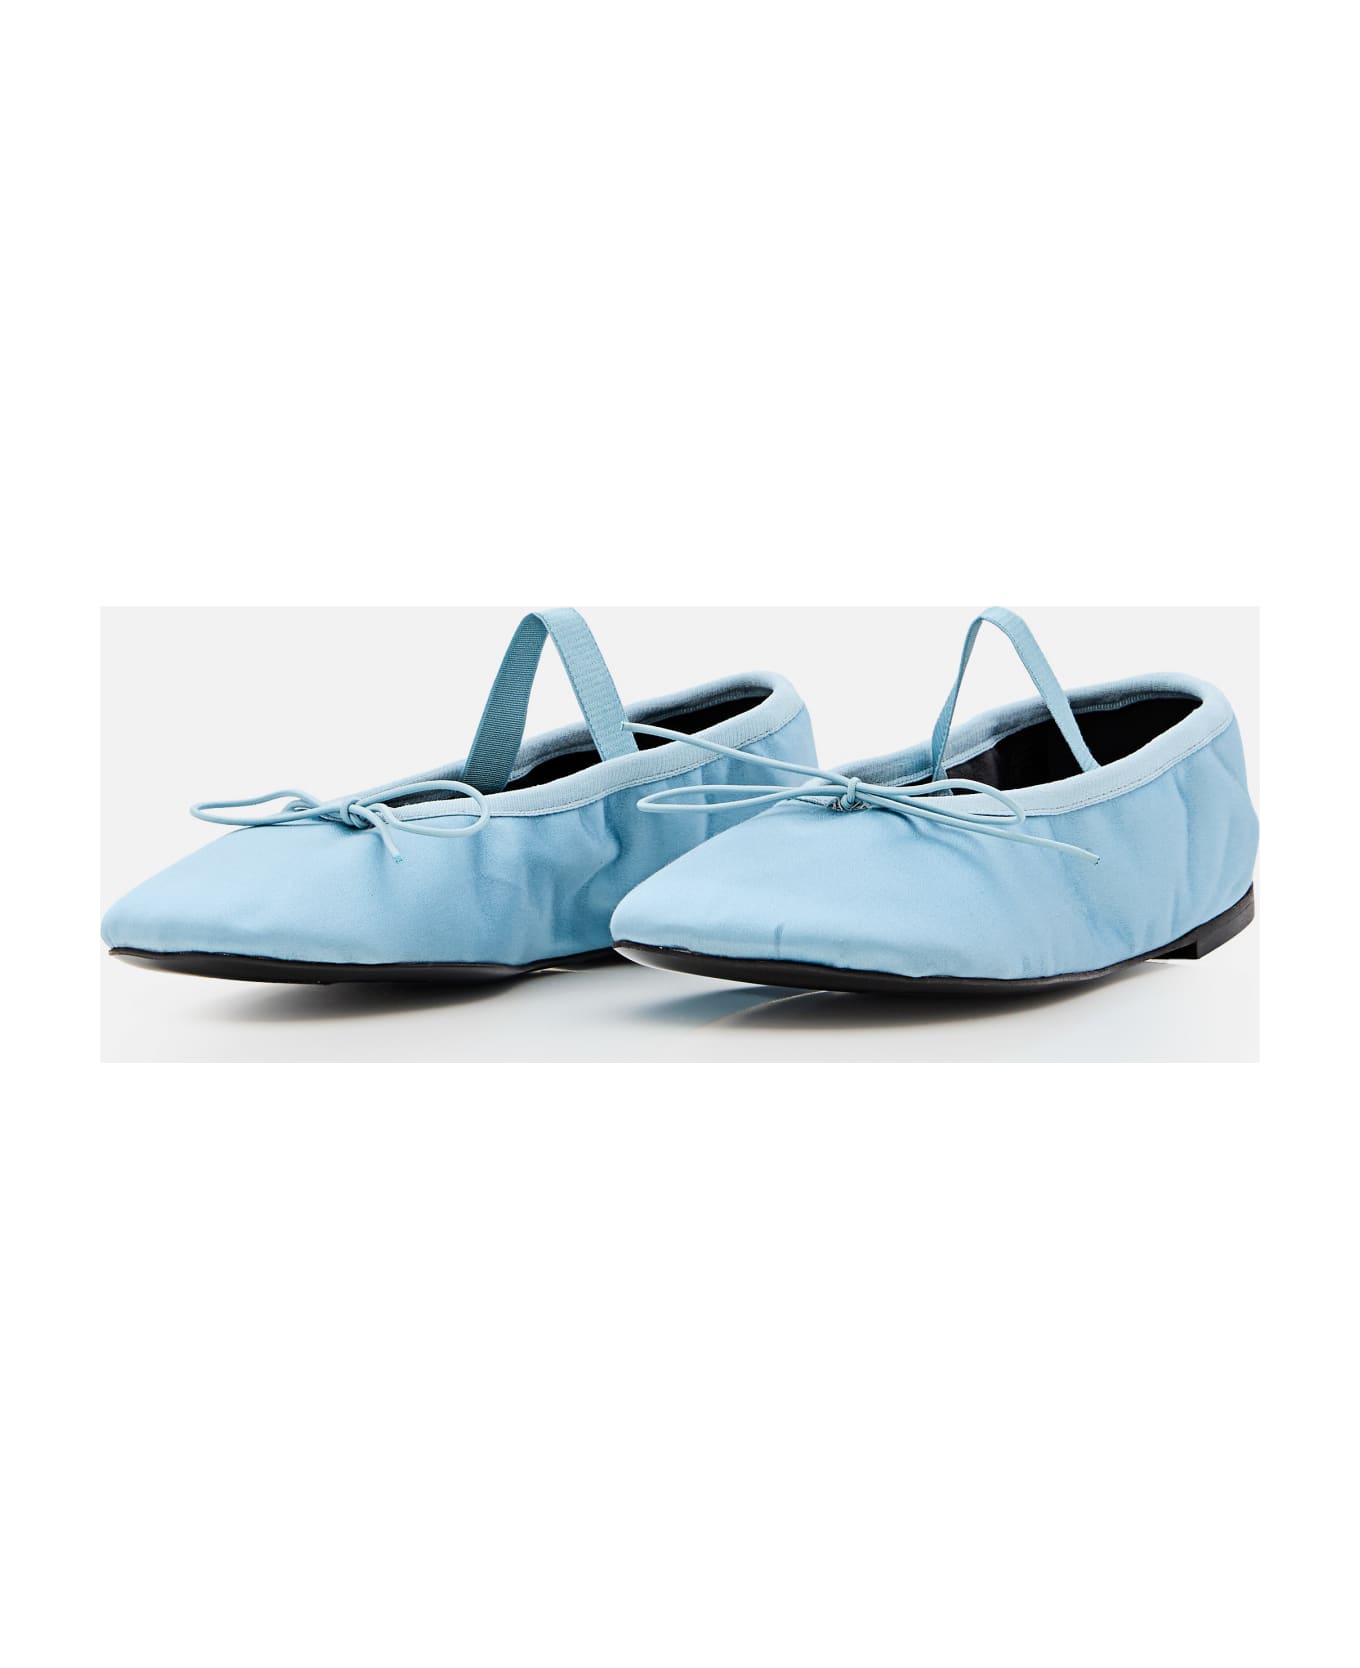 Proenza Schouler Glove Ballet Flats - Blue